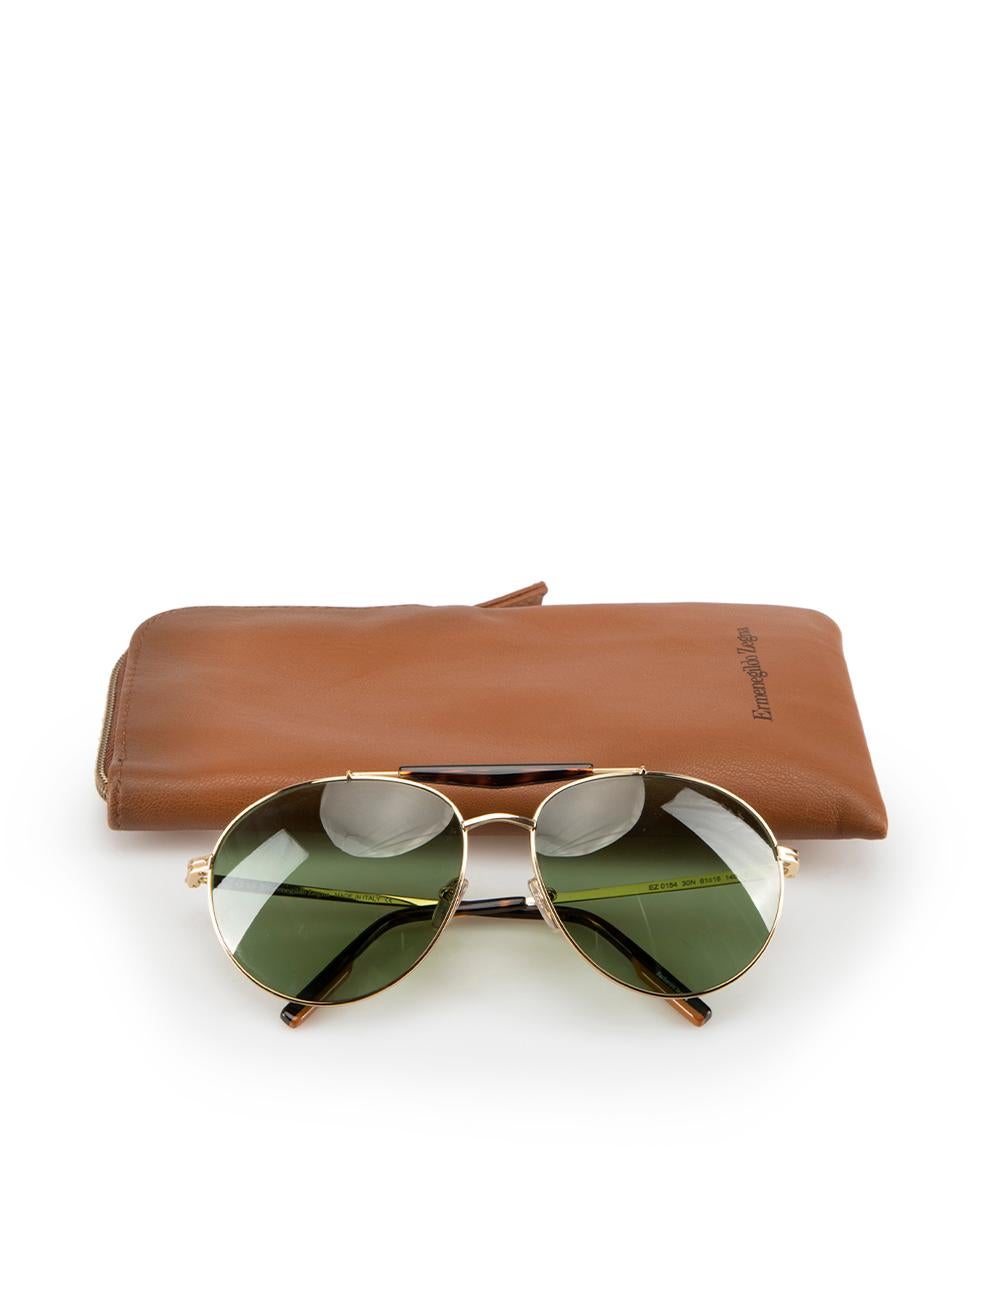 Women's Ermenegildo Zegna Brown Aviator Tortoiseshell Sunglasses